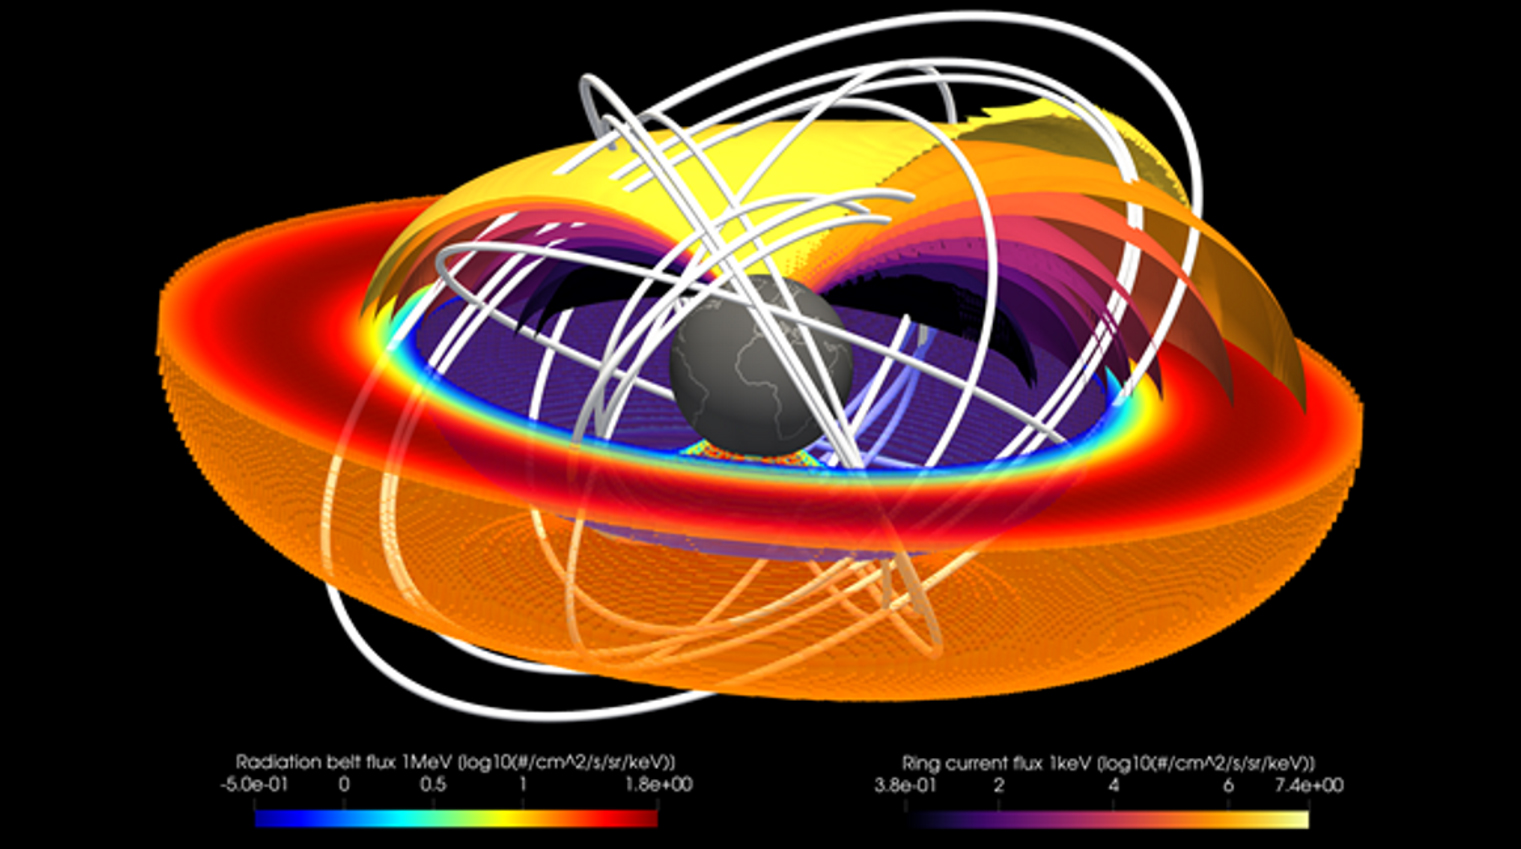 Modell eines Strahlengürtels der Erde